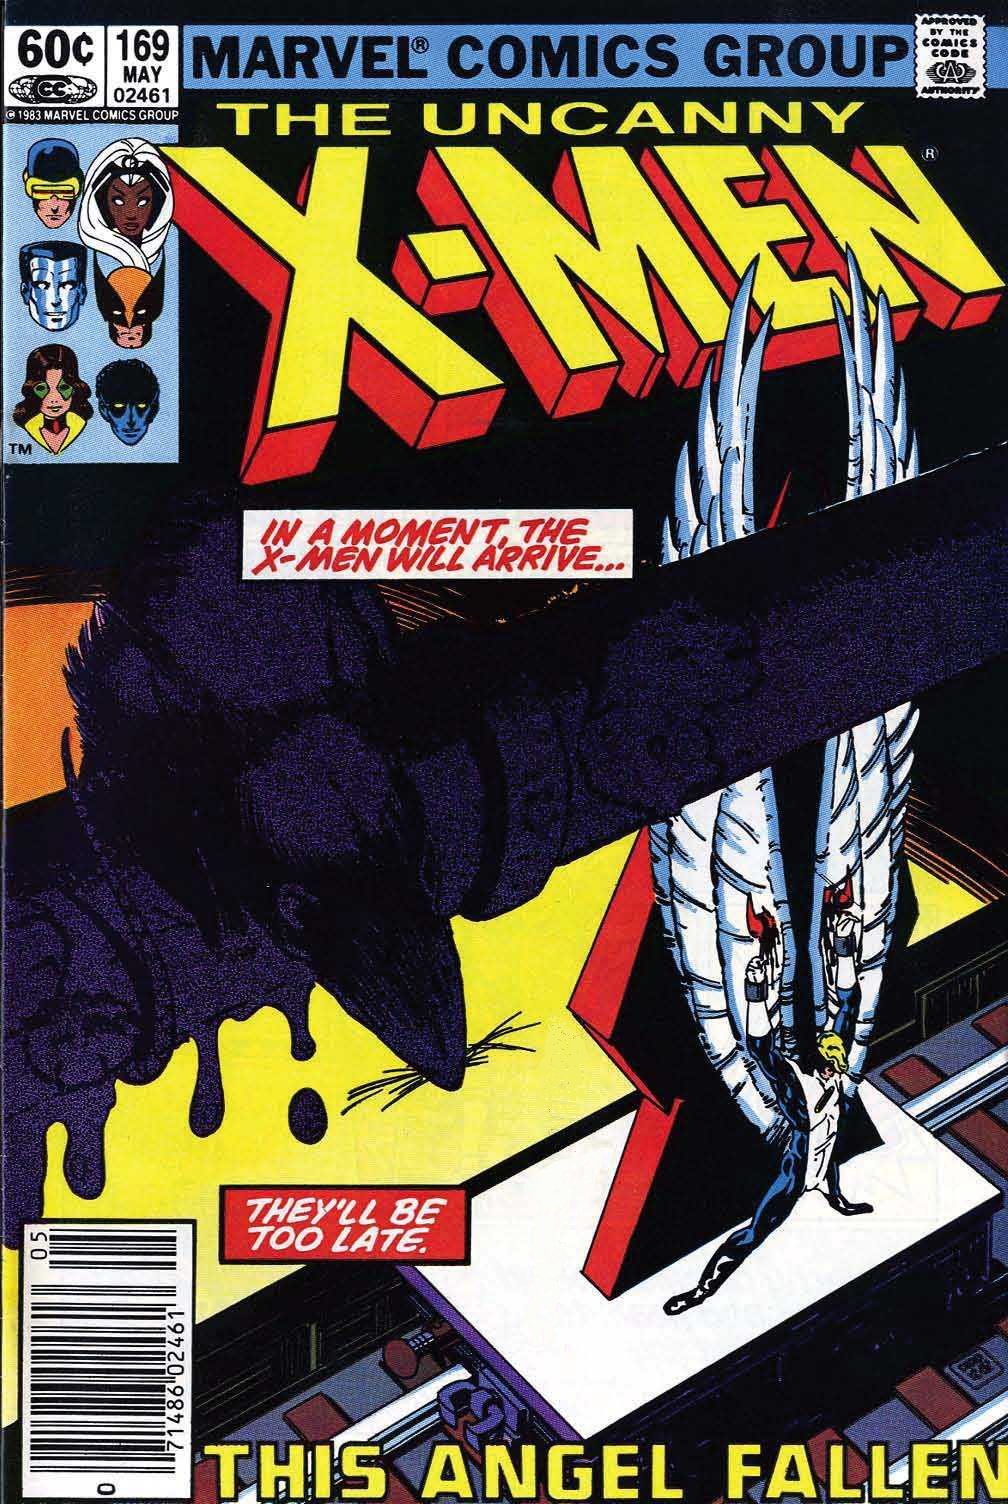 Uncanny X-Men Vol. 1 #169